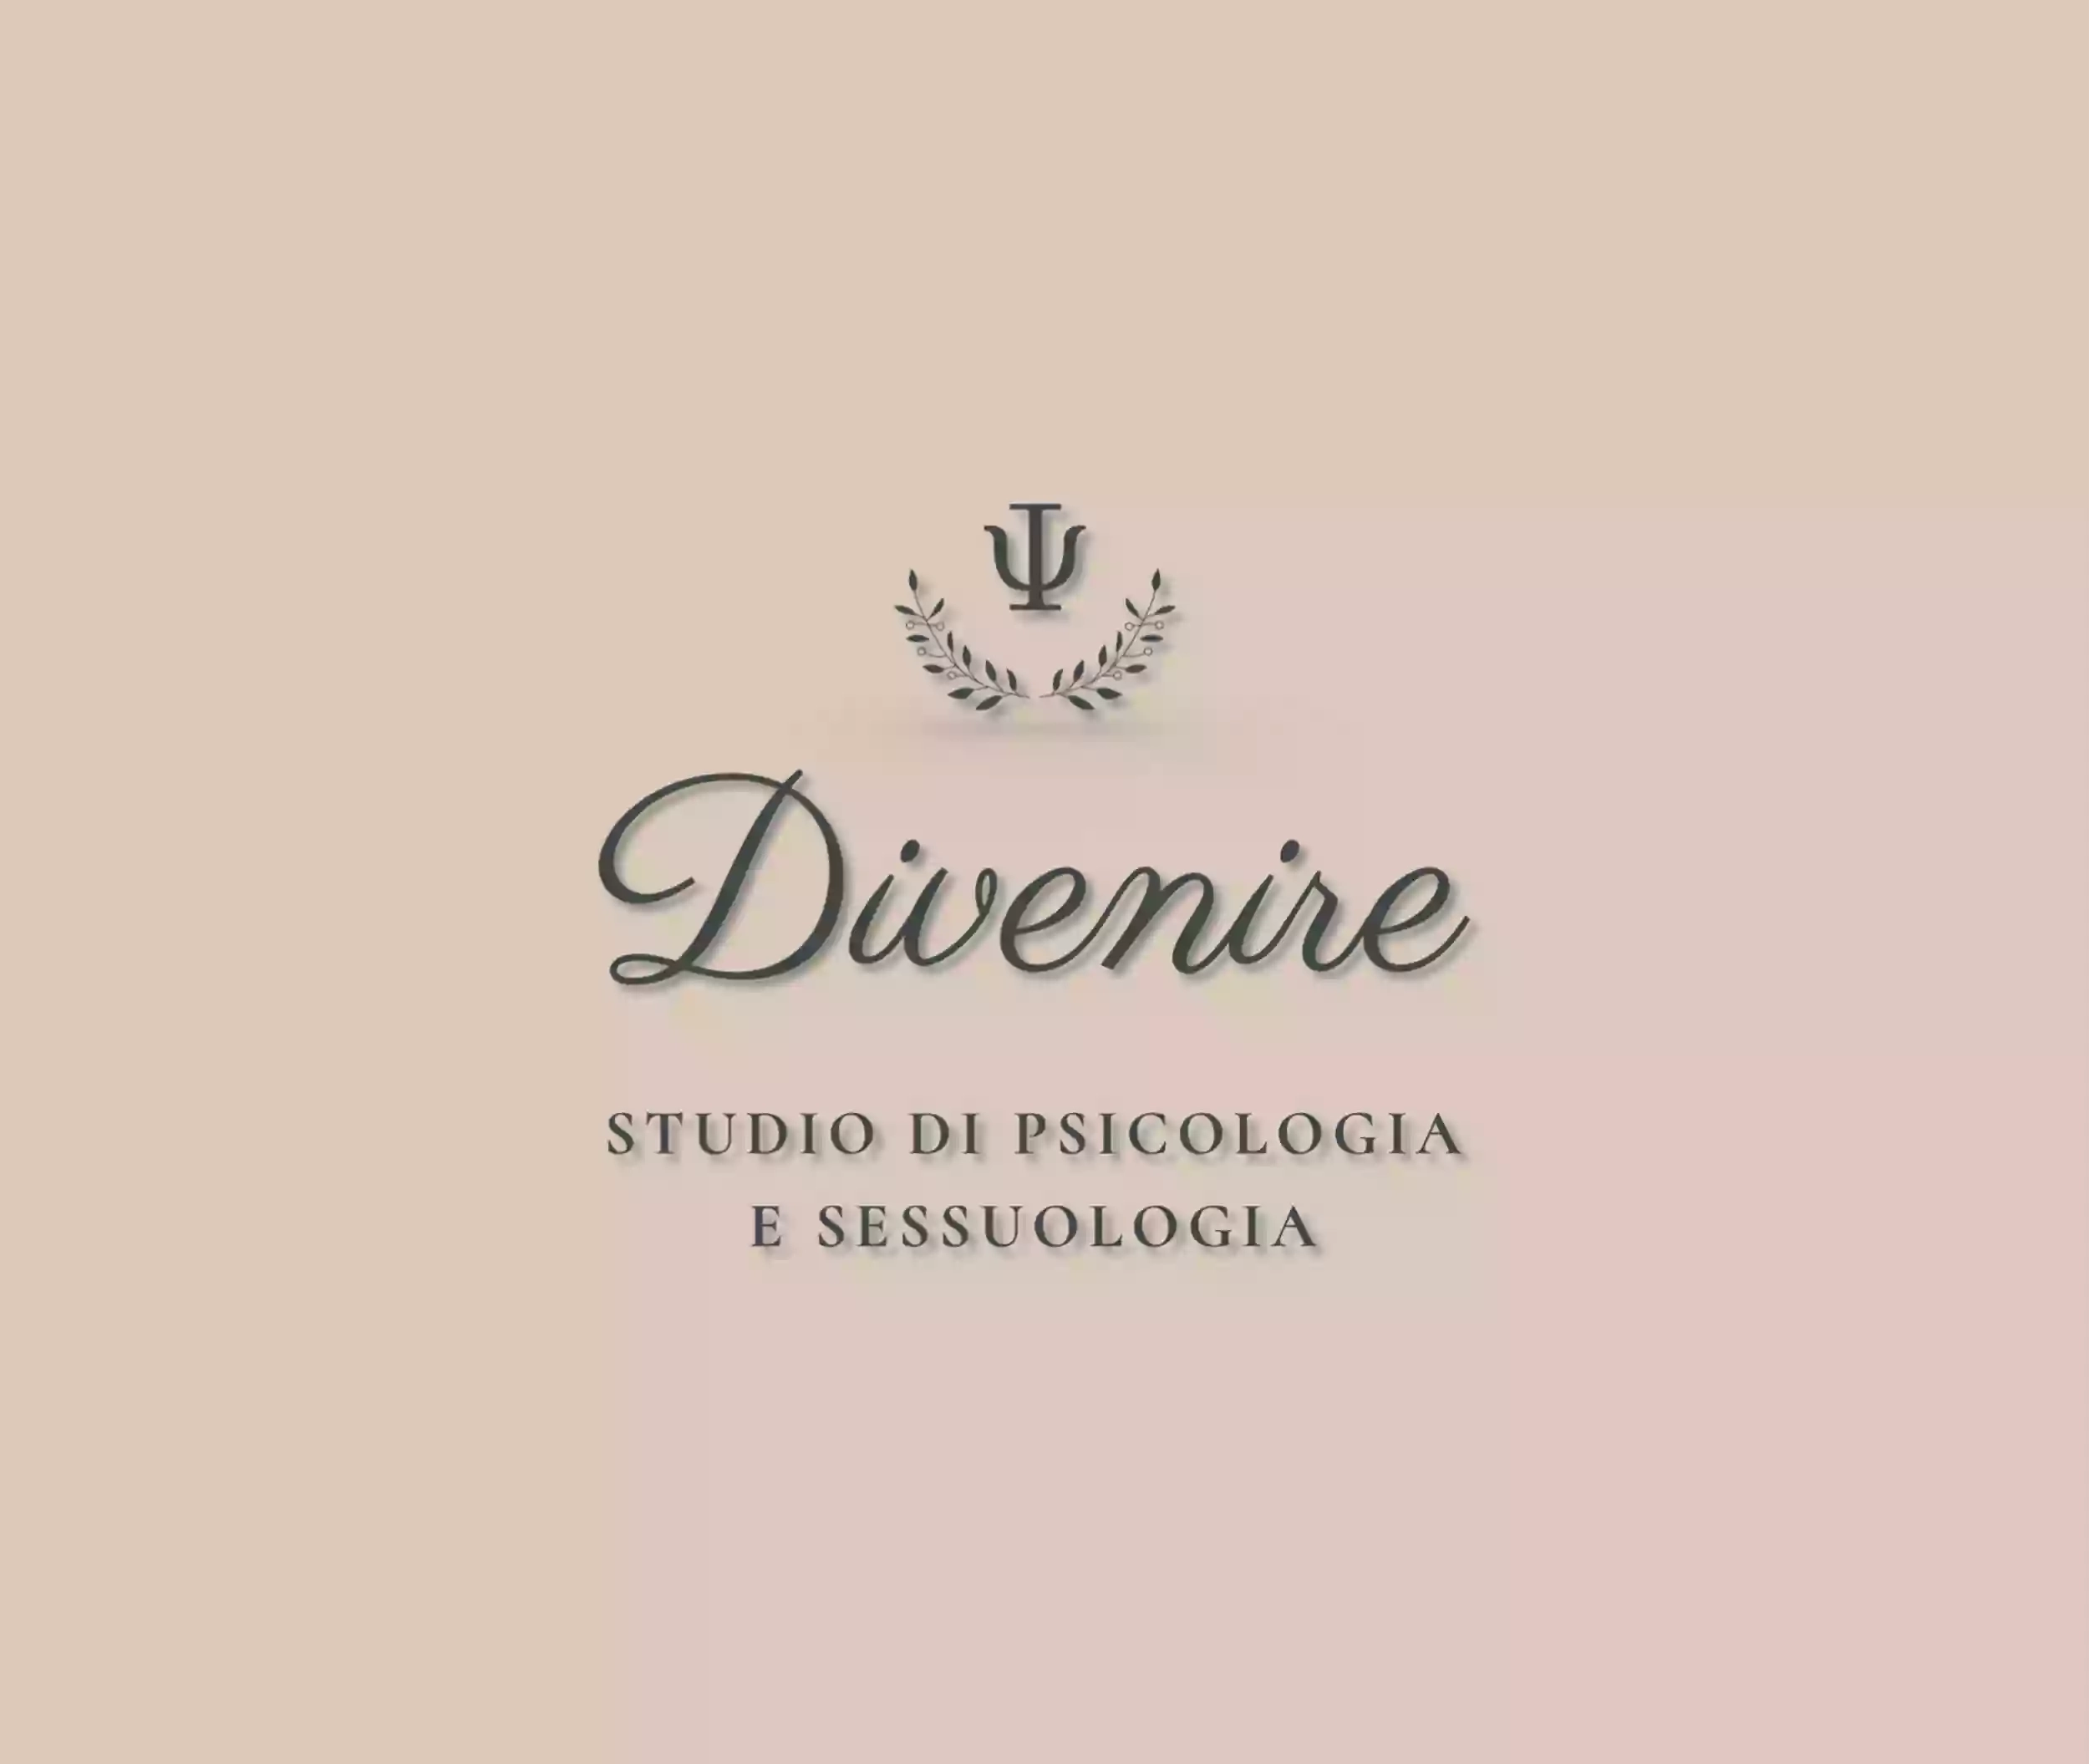 DIVENIRE・Studio di Psicologia e Sessuologia